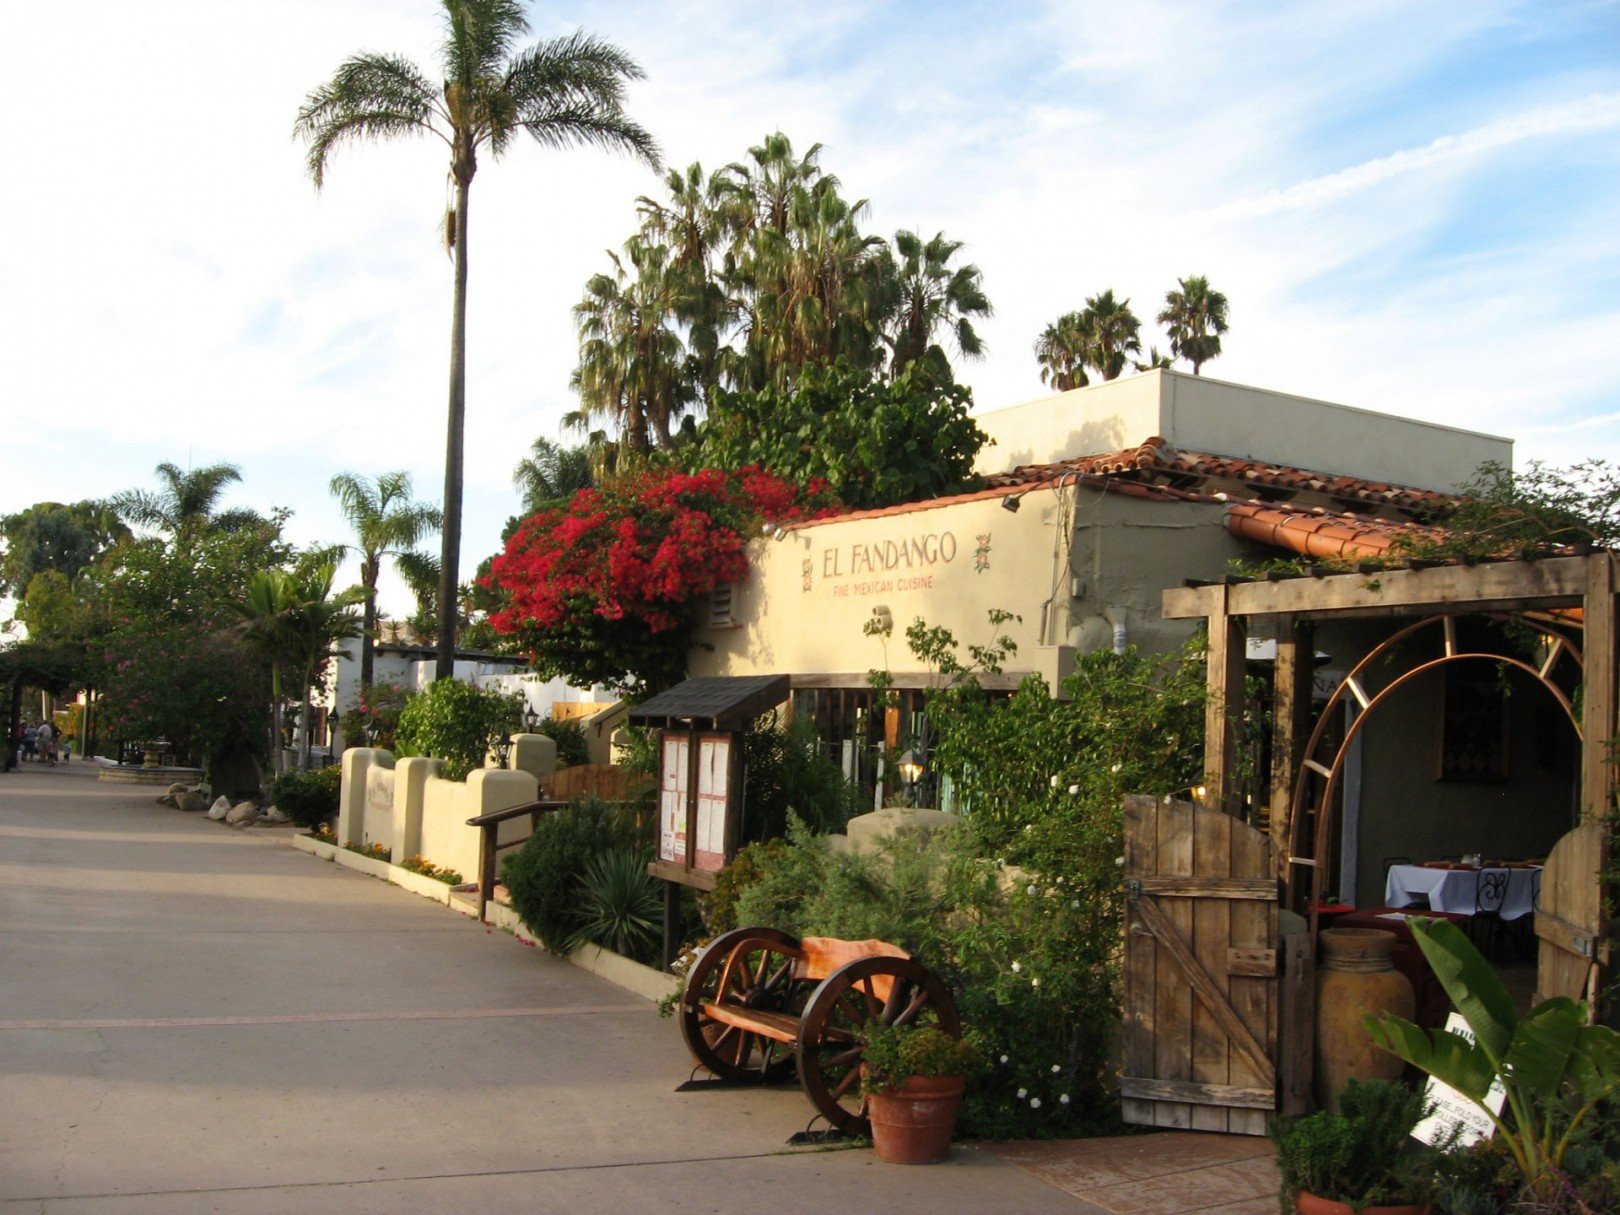 5141464301 898271c9f0 k - Wat te doen in San Diego: de 15 mooiste bezienswaardigheden (+ hotel en restaurant tips)